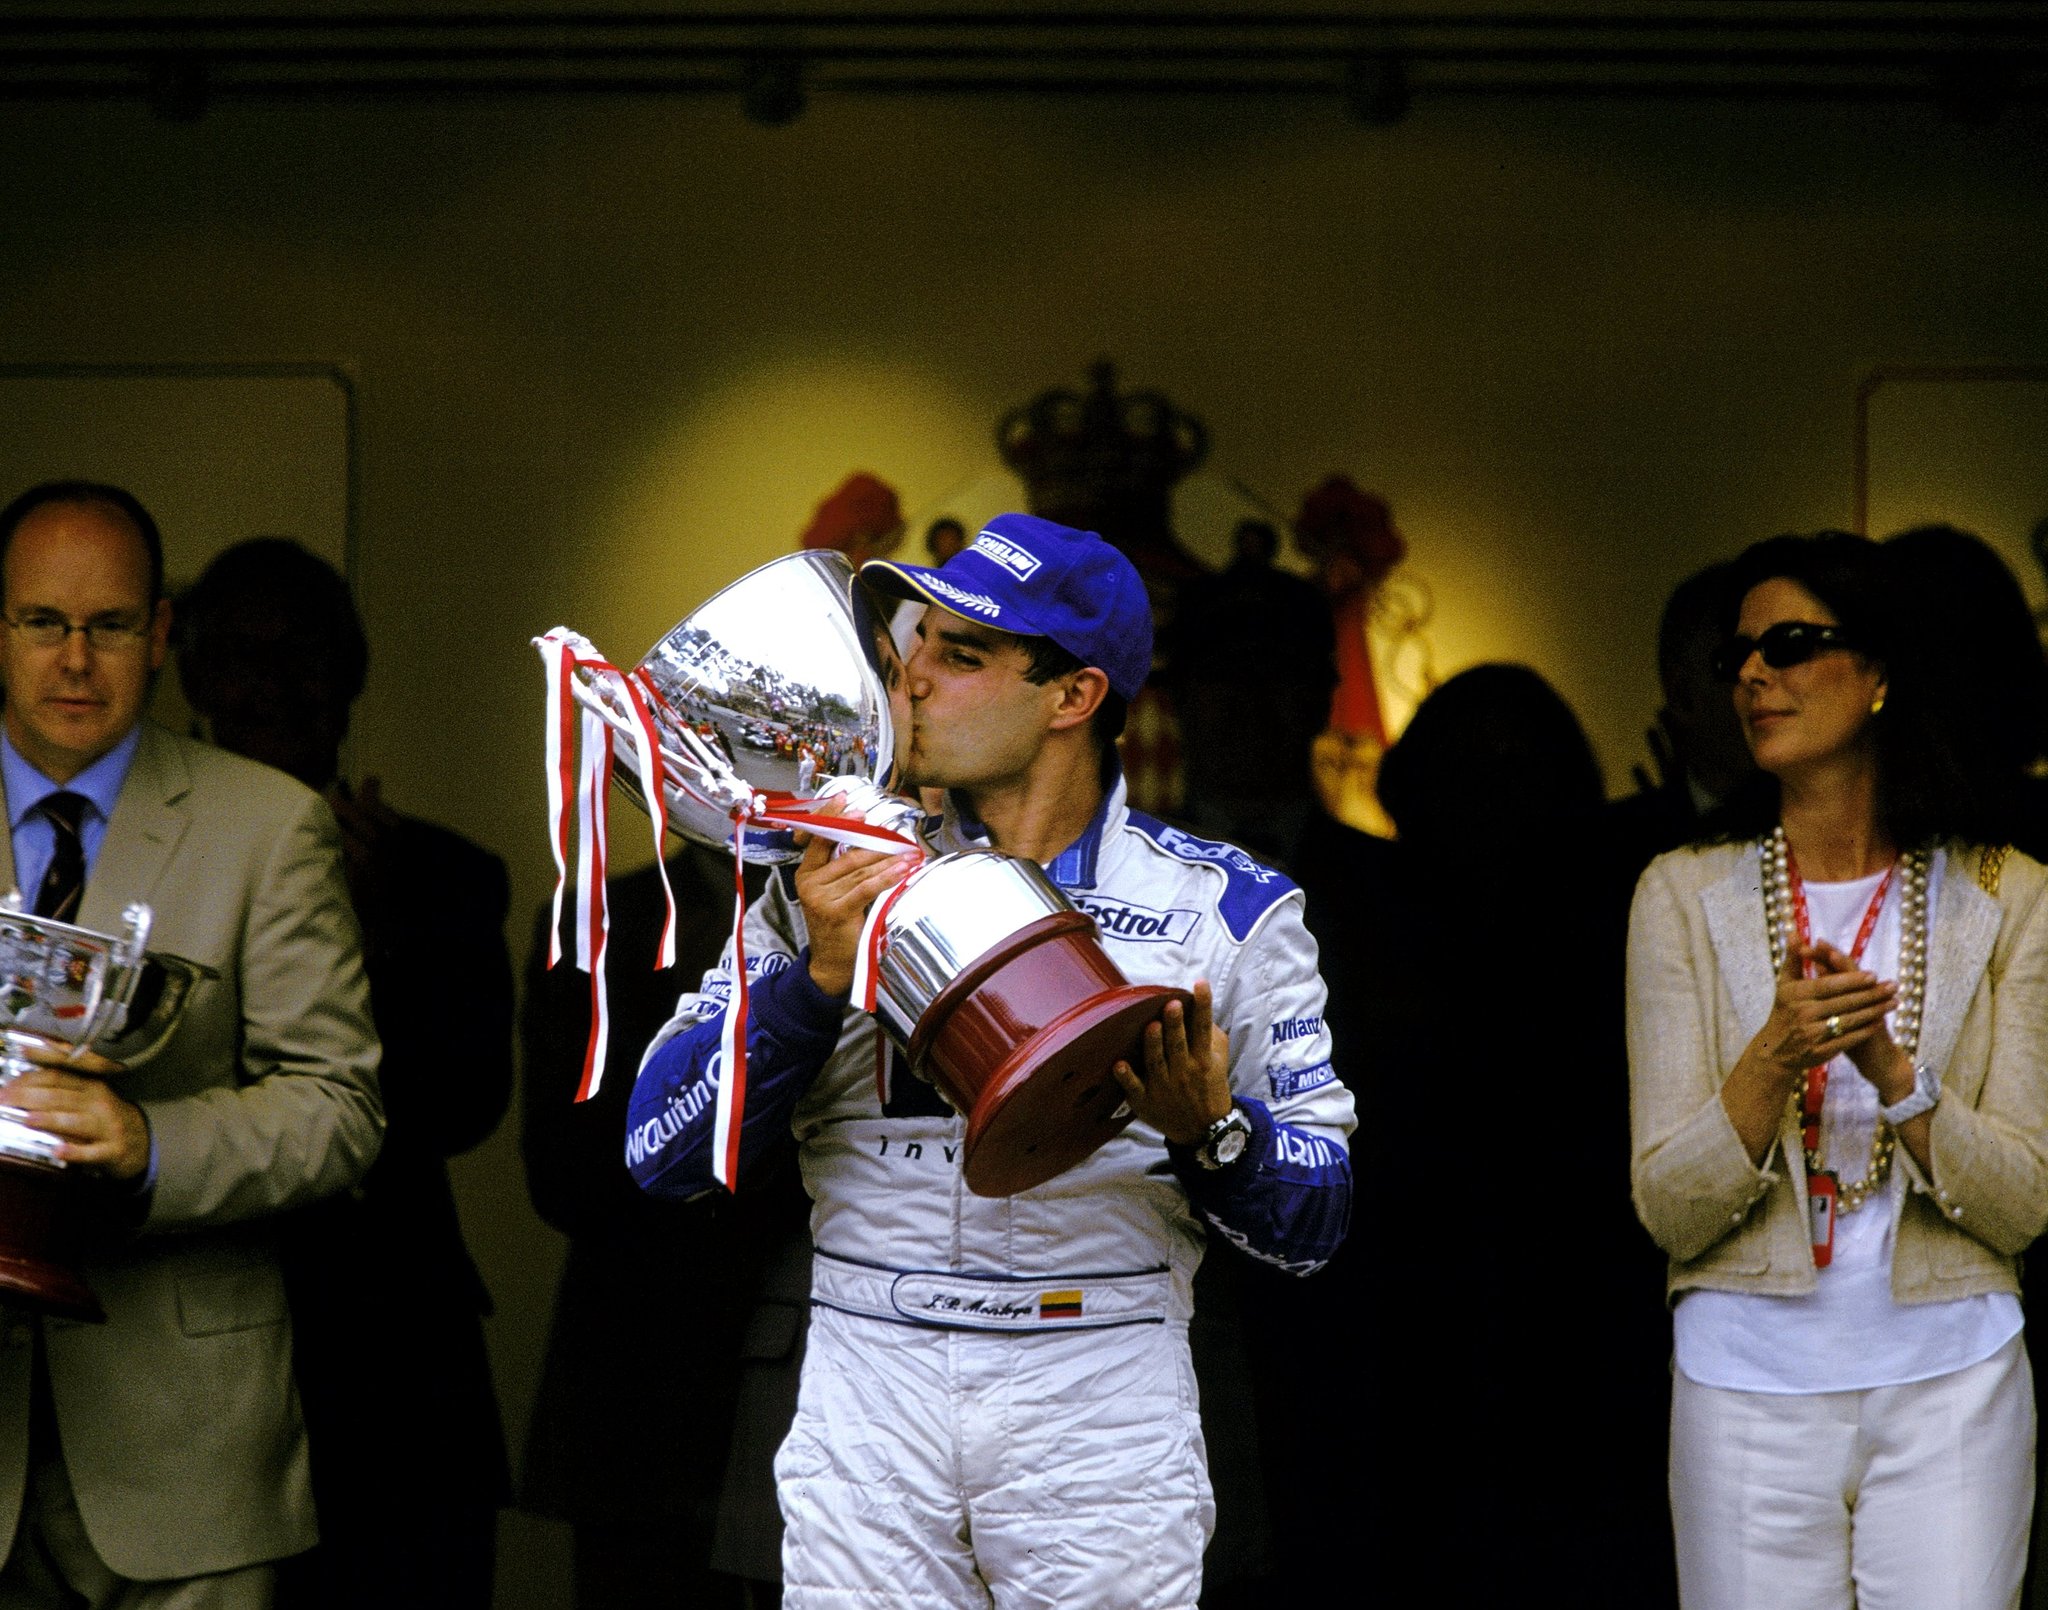 La vez que Juan Pablo Montoya reinó en las calles de Mónaco y colocó a Colombia en lo más alto de la Fórmula 1